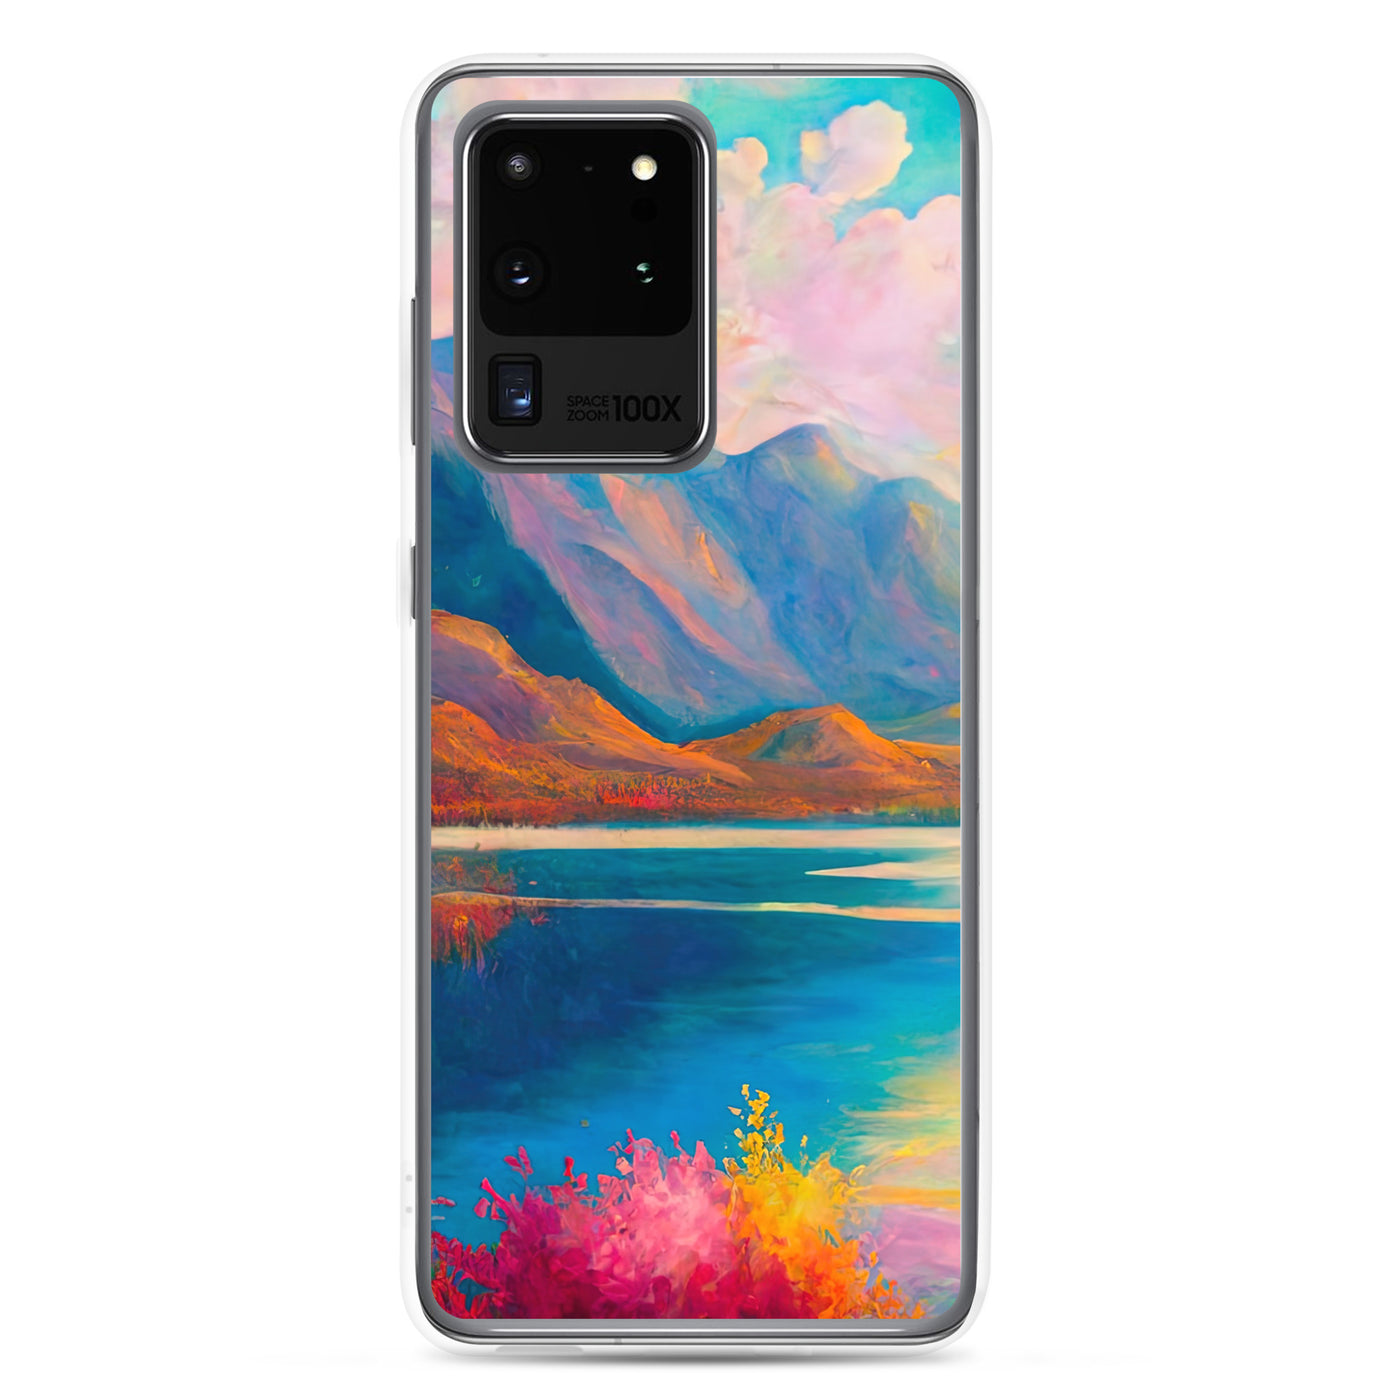 Berglandschaft und Bergsee - Farbige Ölmalerei - Samsung Schutzhülle (durchsichtig) berge xxx Samsung Galaxy S20 Ultra